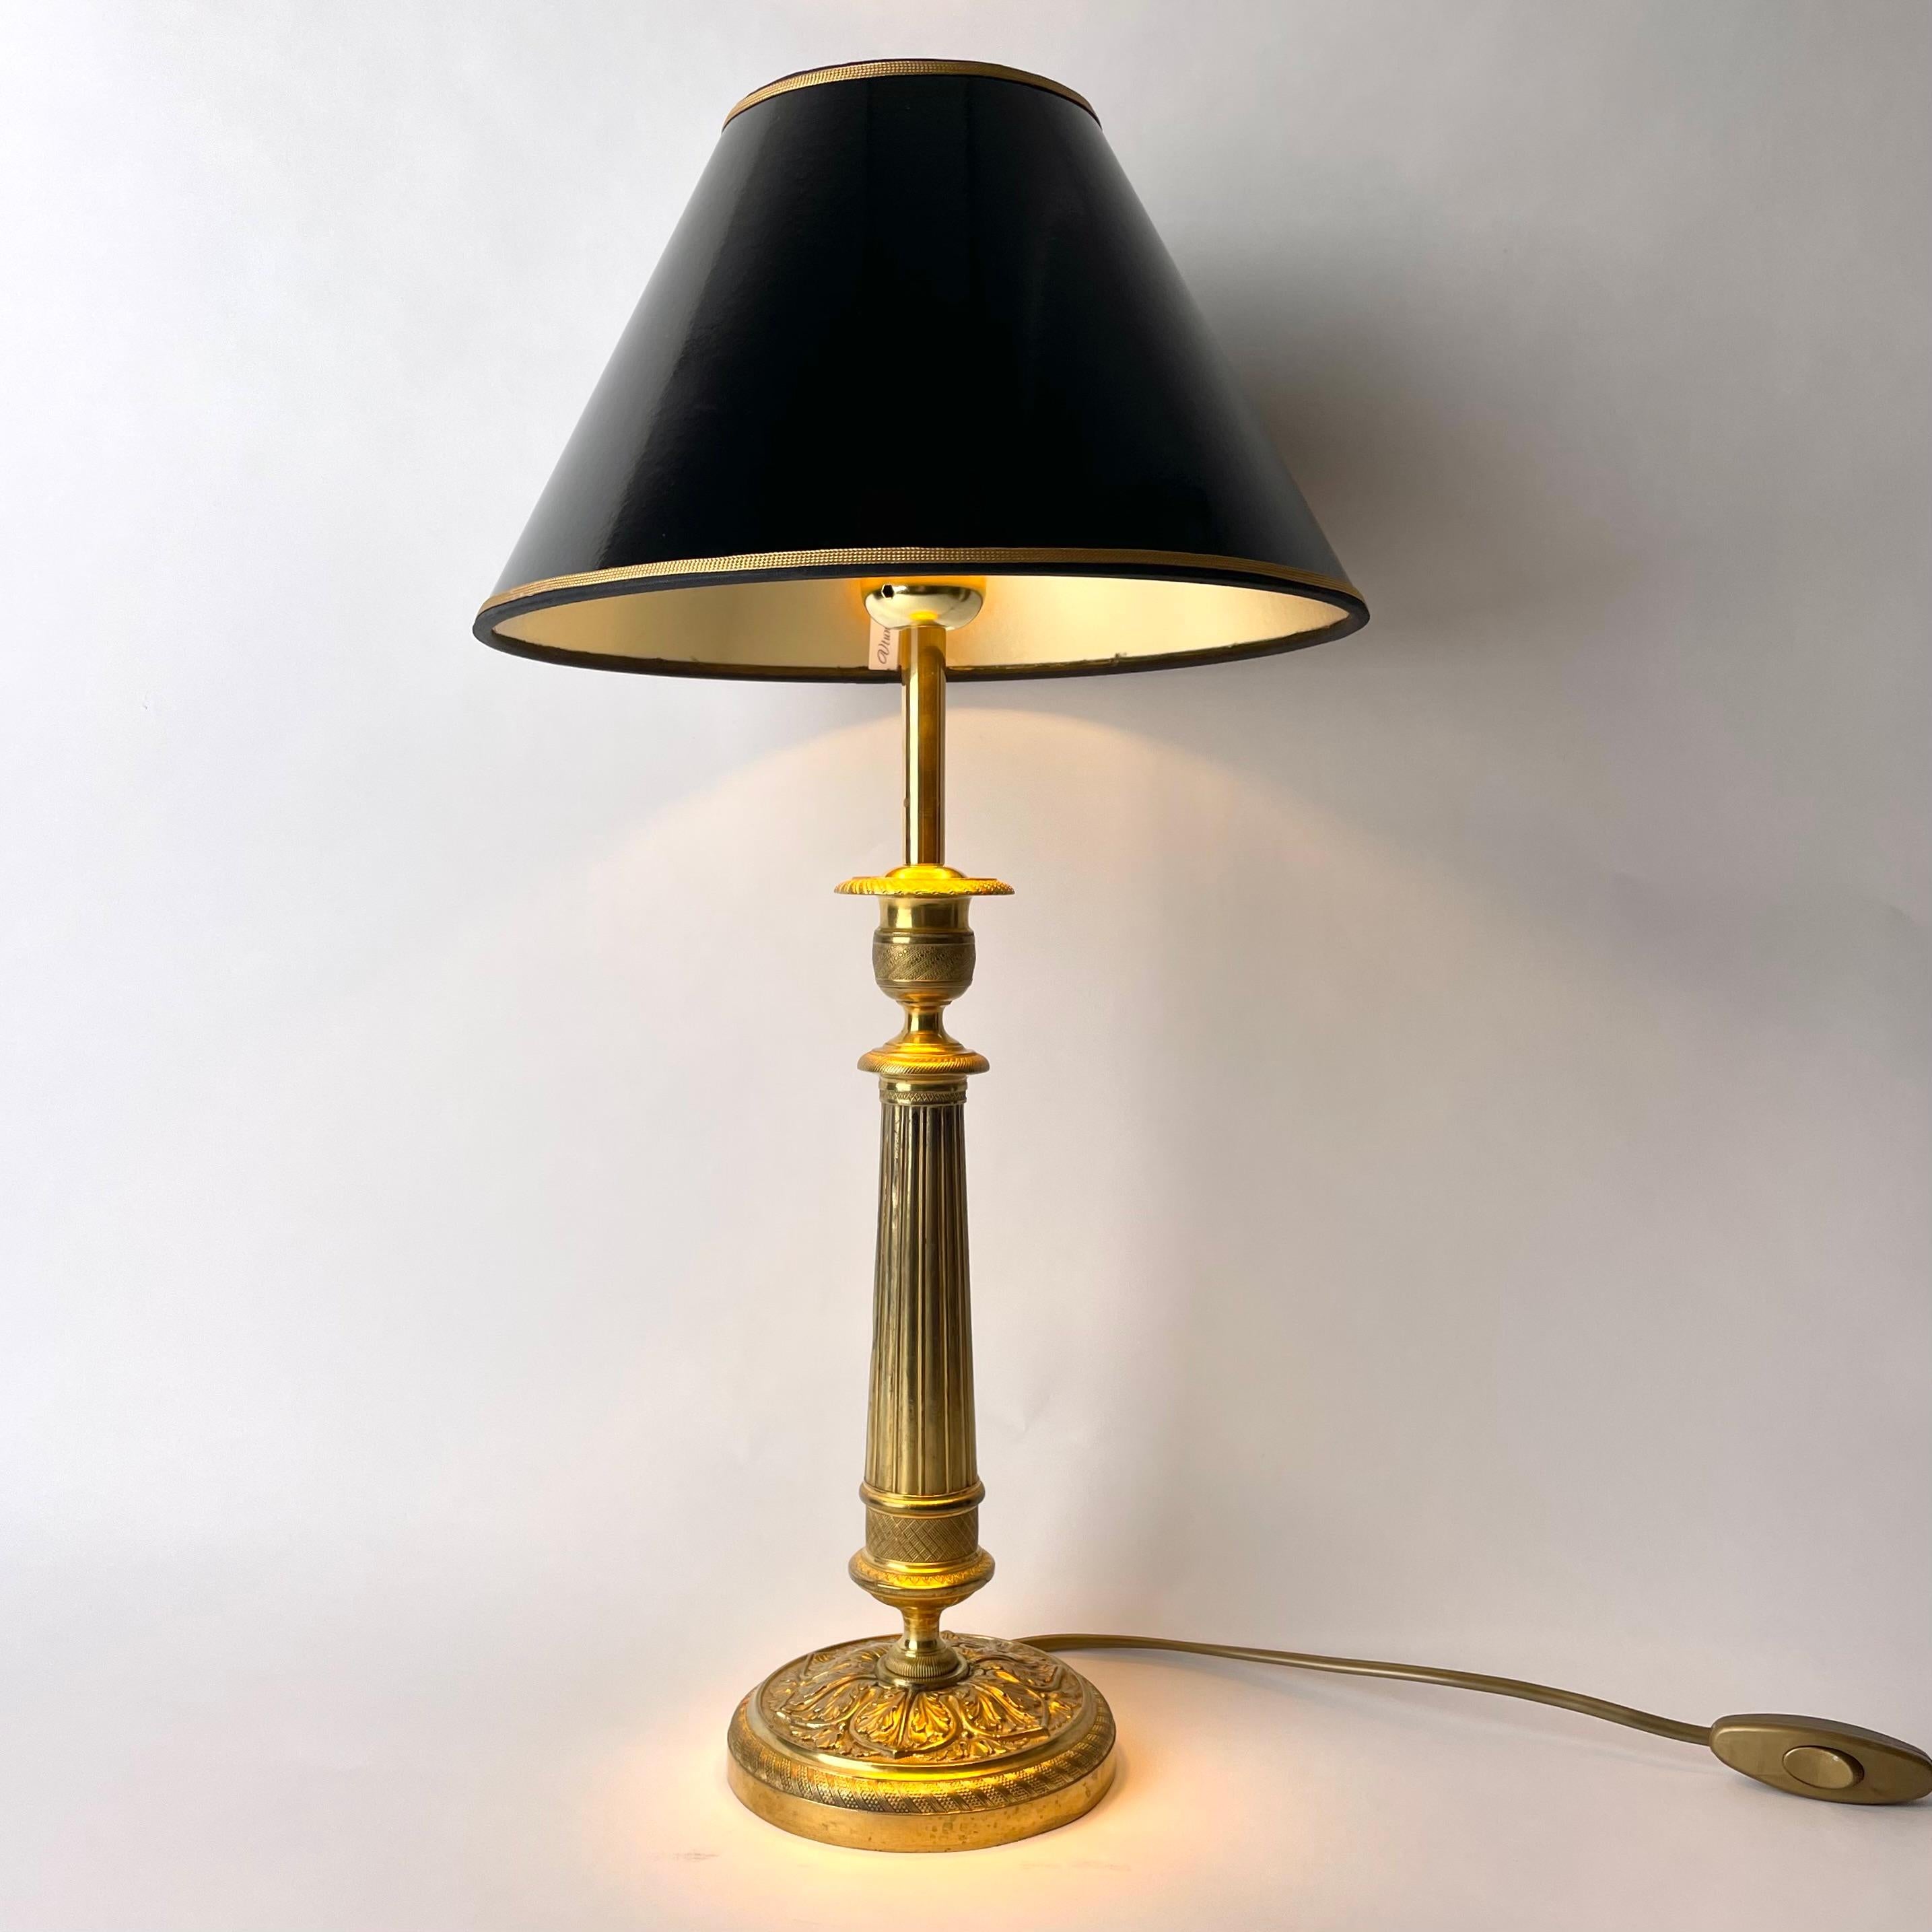 Lampe de table élégante en bronze. Il s'agit à l'origine d'un chandelier Empire fabriqué en France dans les années 1820. La partie centrale en forme de colonne. Richement décoré de feuilles et de décorations Empire d'époque.

Nouvel abat-jour en